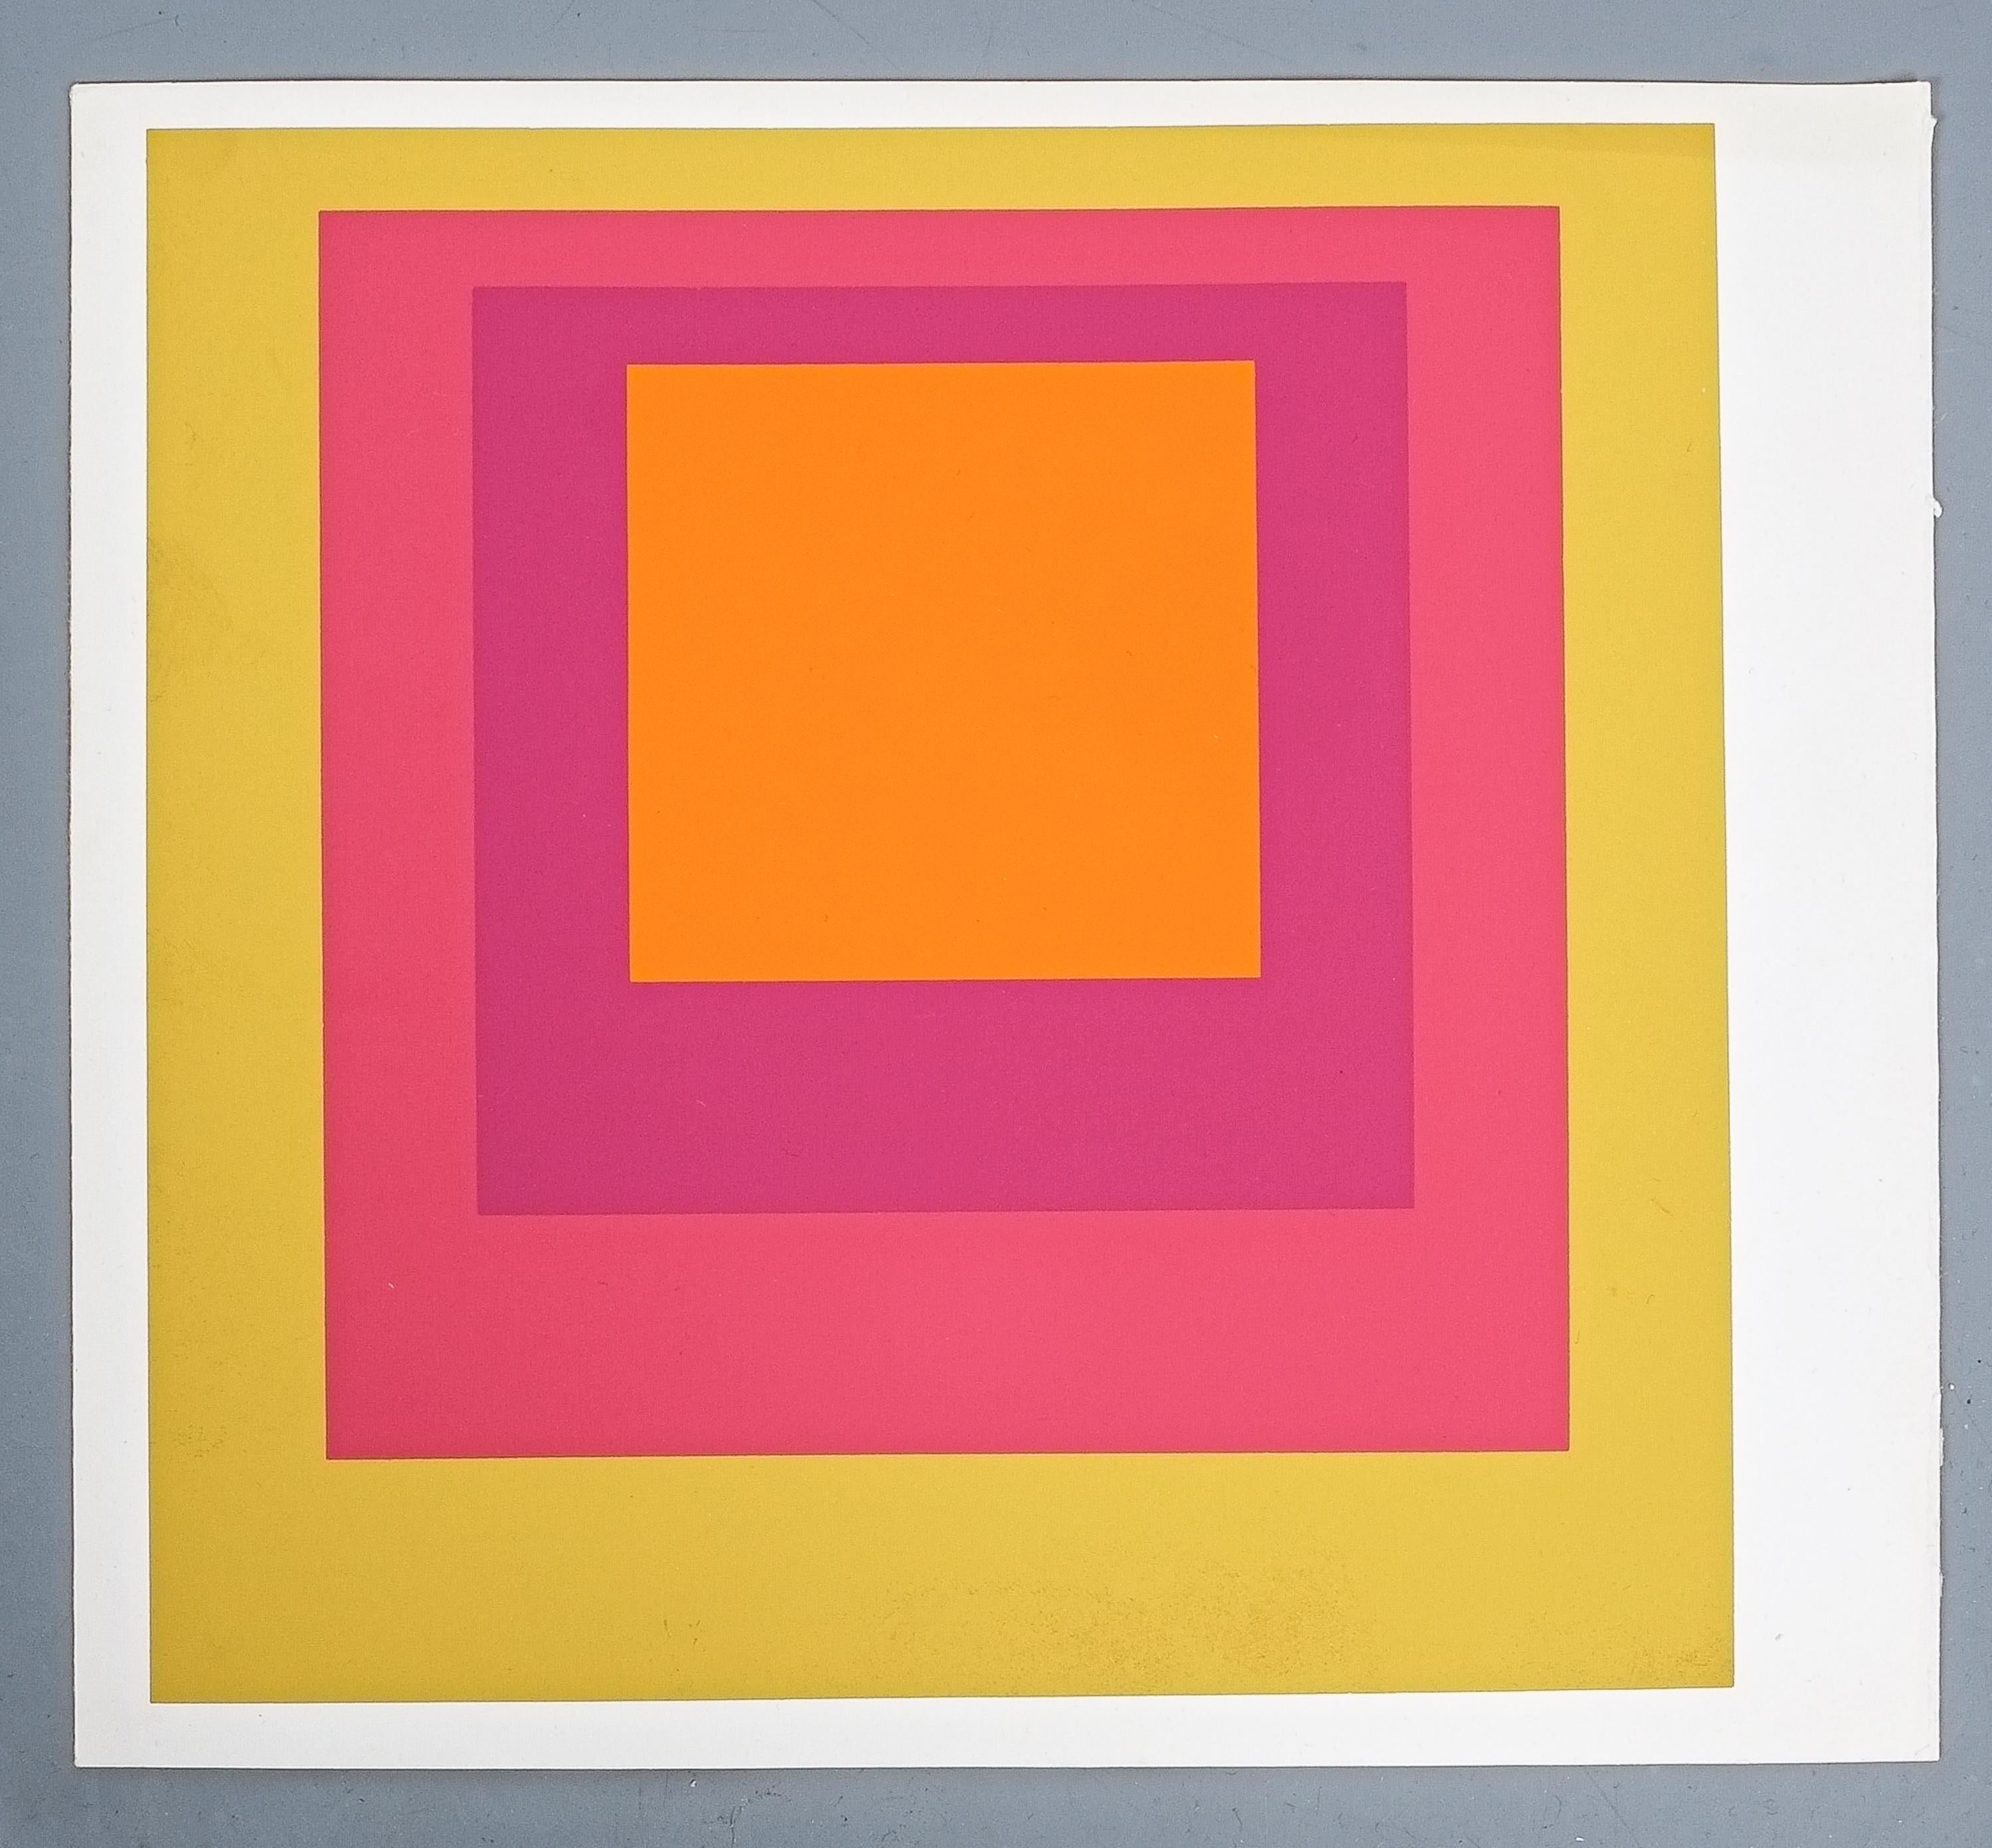 Paper 1 of 9 Screen-Prints Serigraph after Josef Albers Albers, 1977